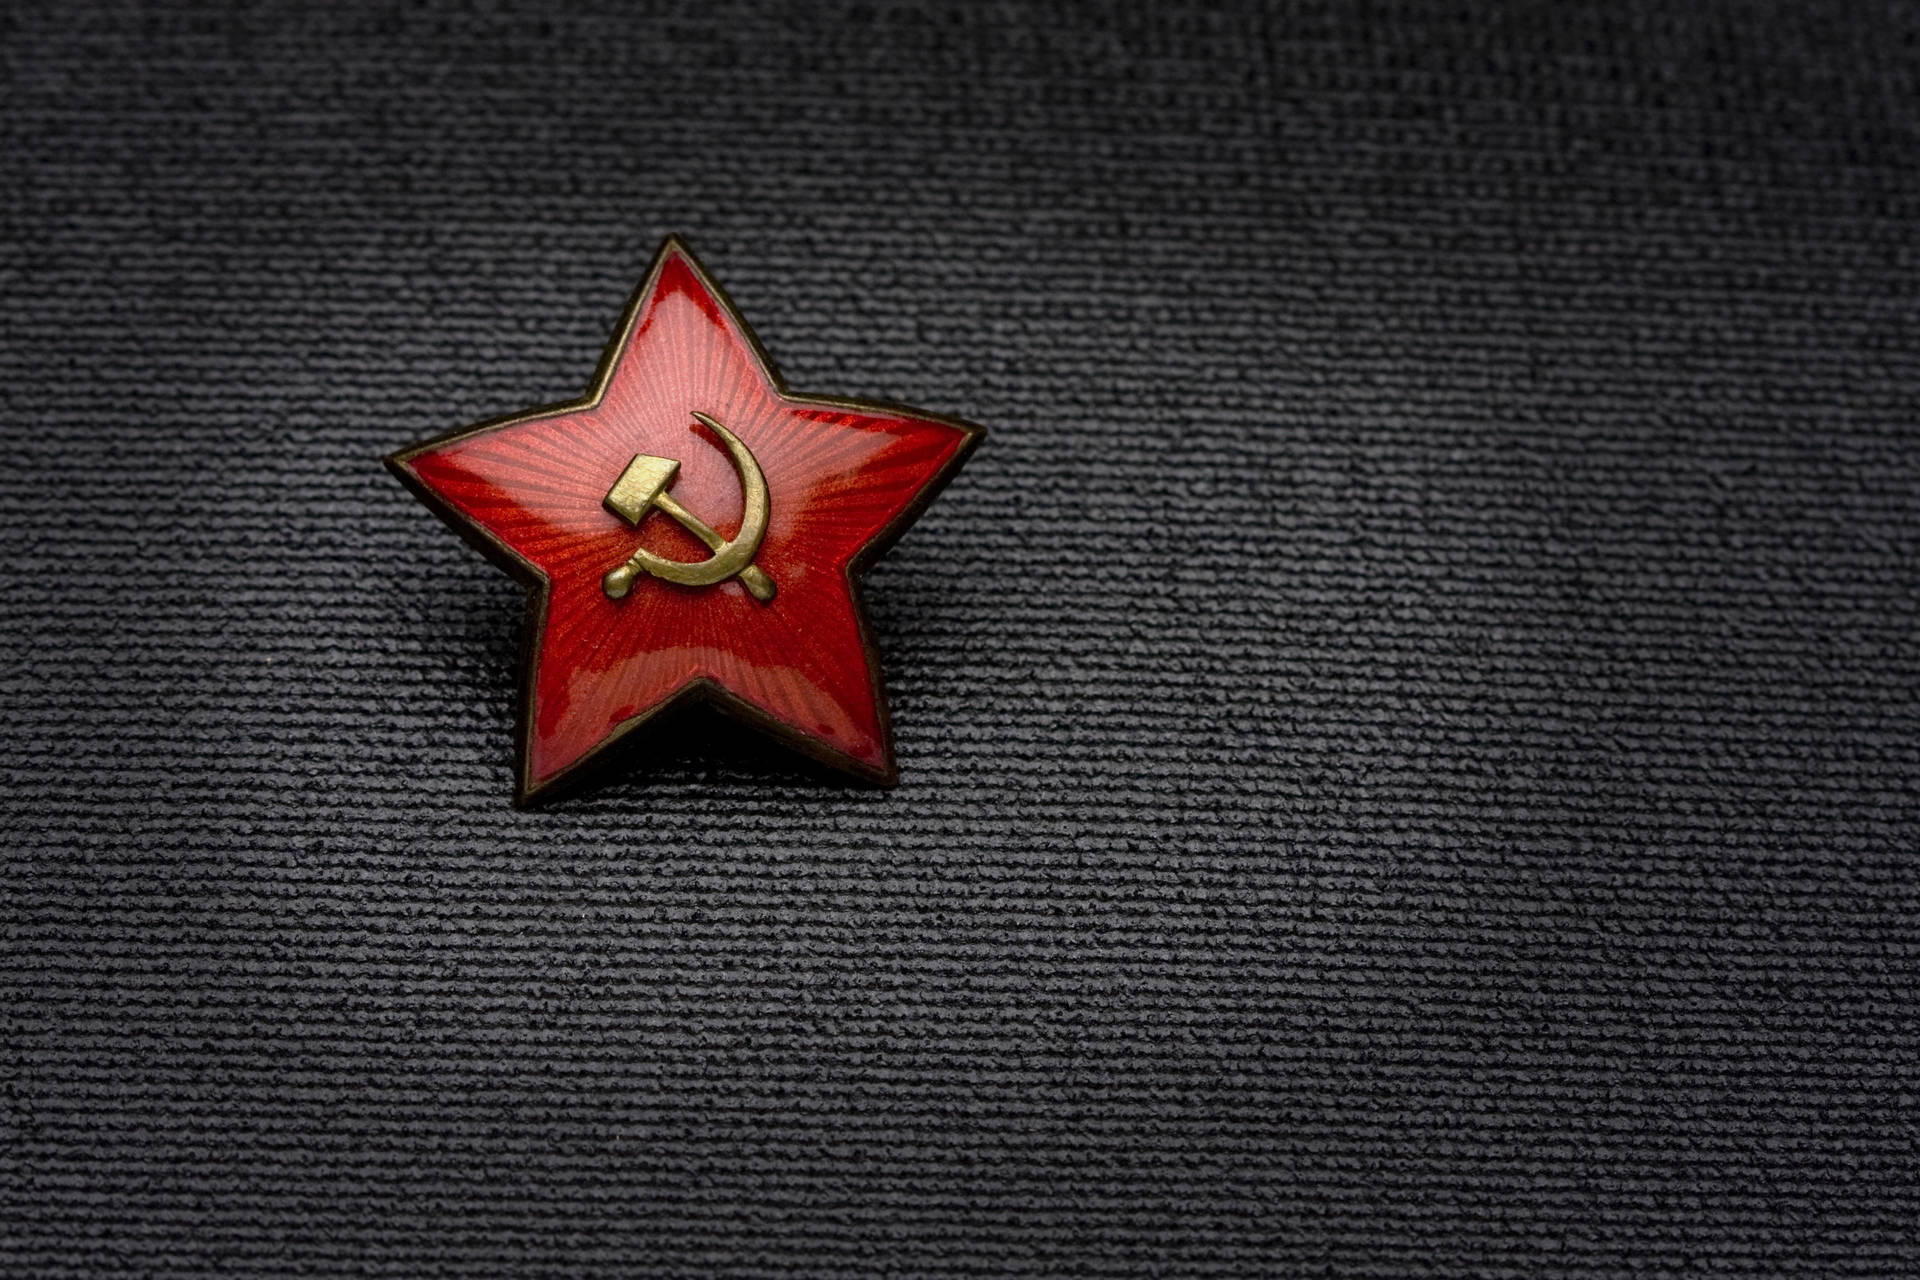 Bandeira,logo Ou Distintivo Da União Soviética. Papel de Parede